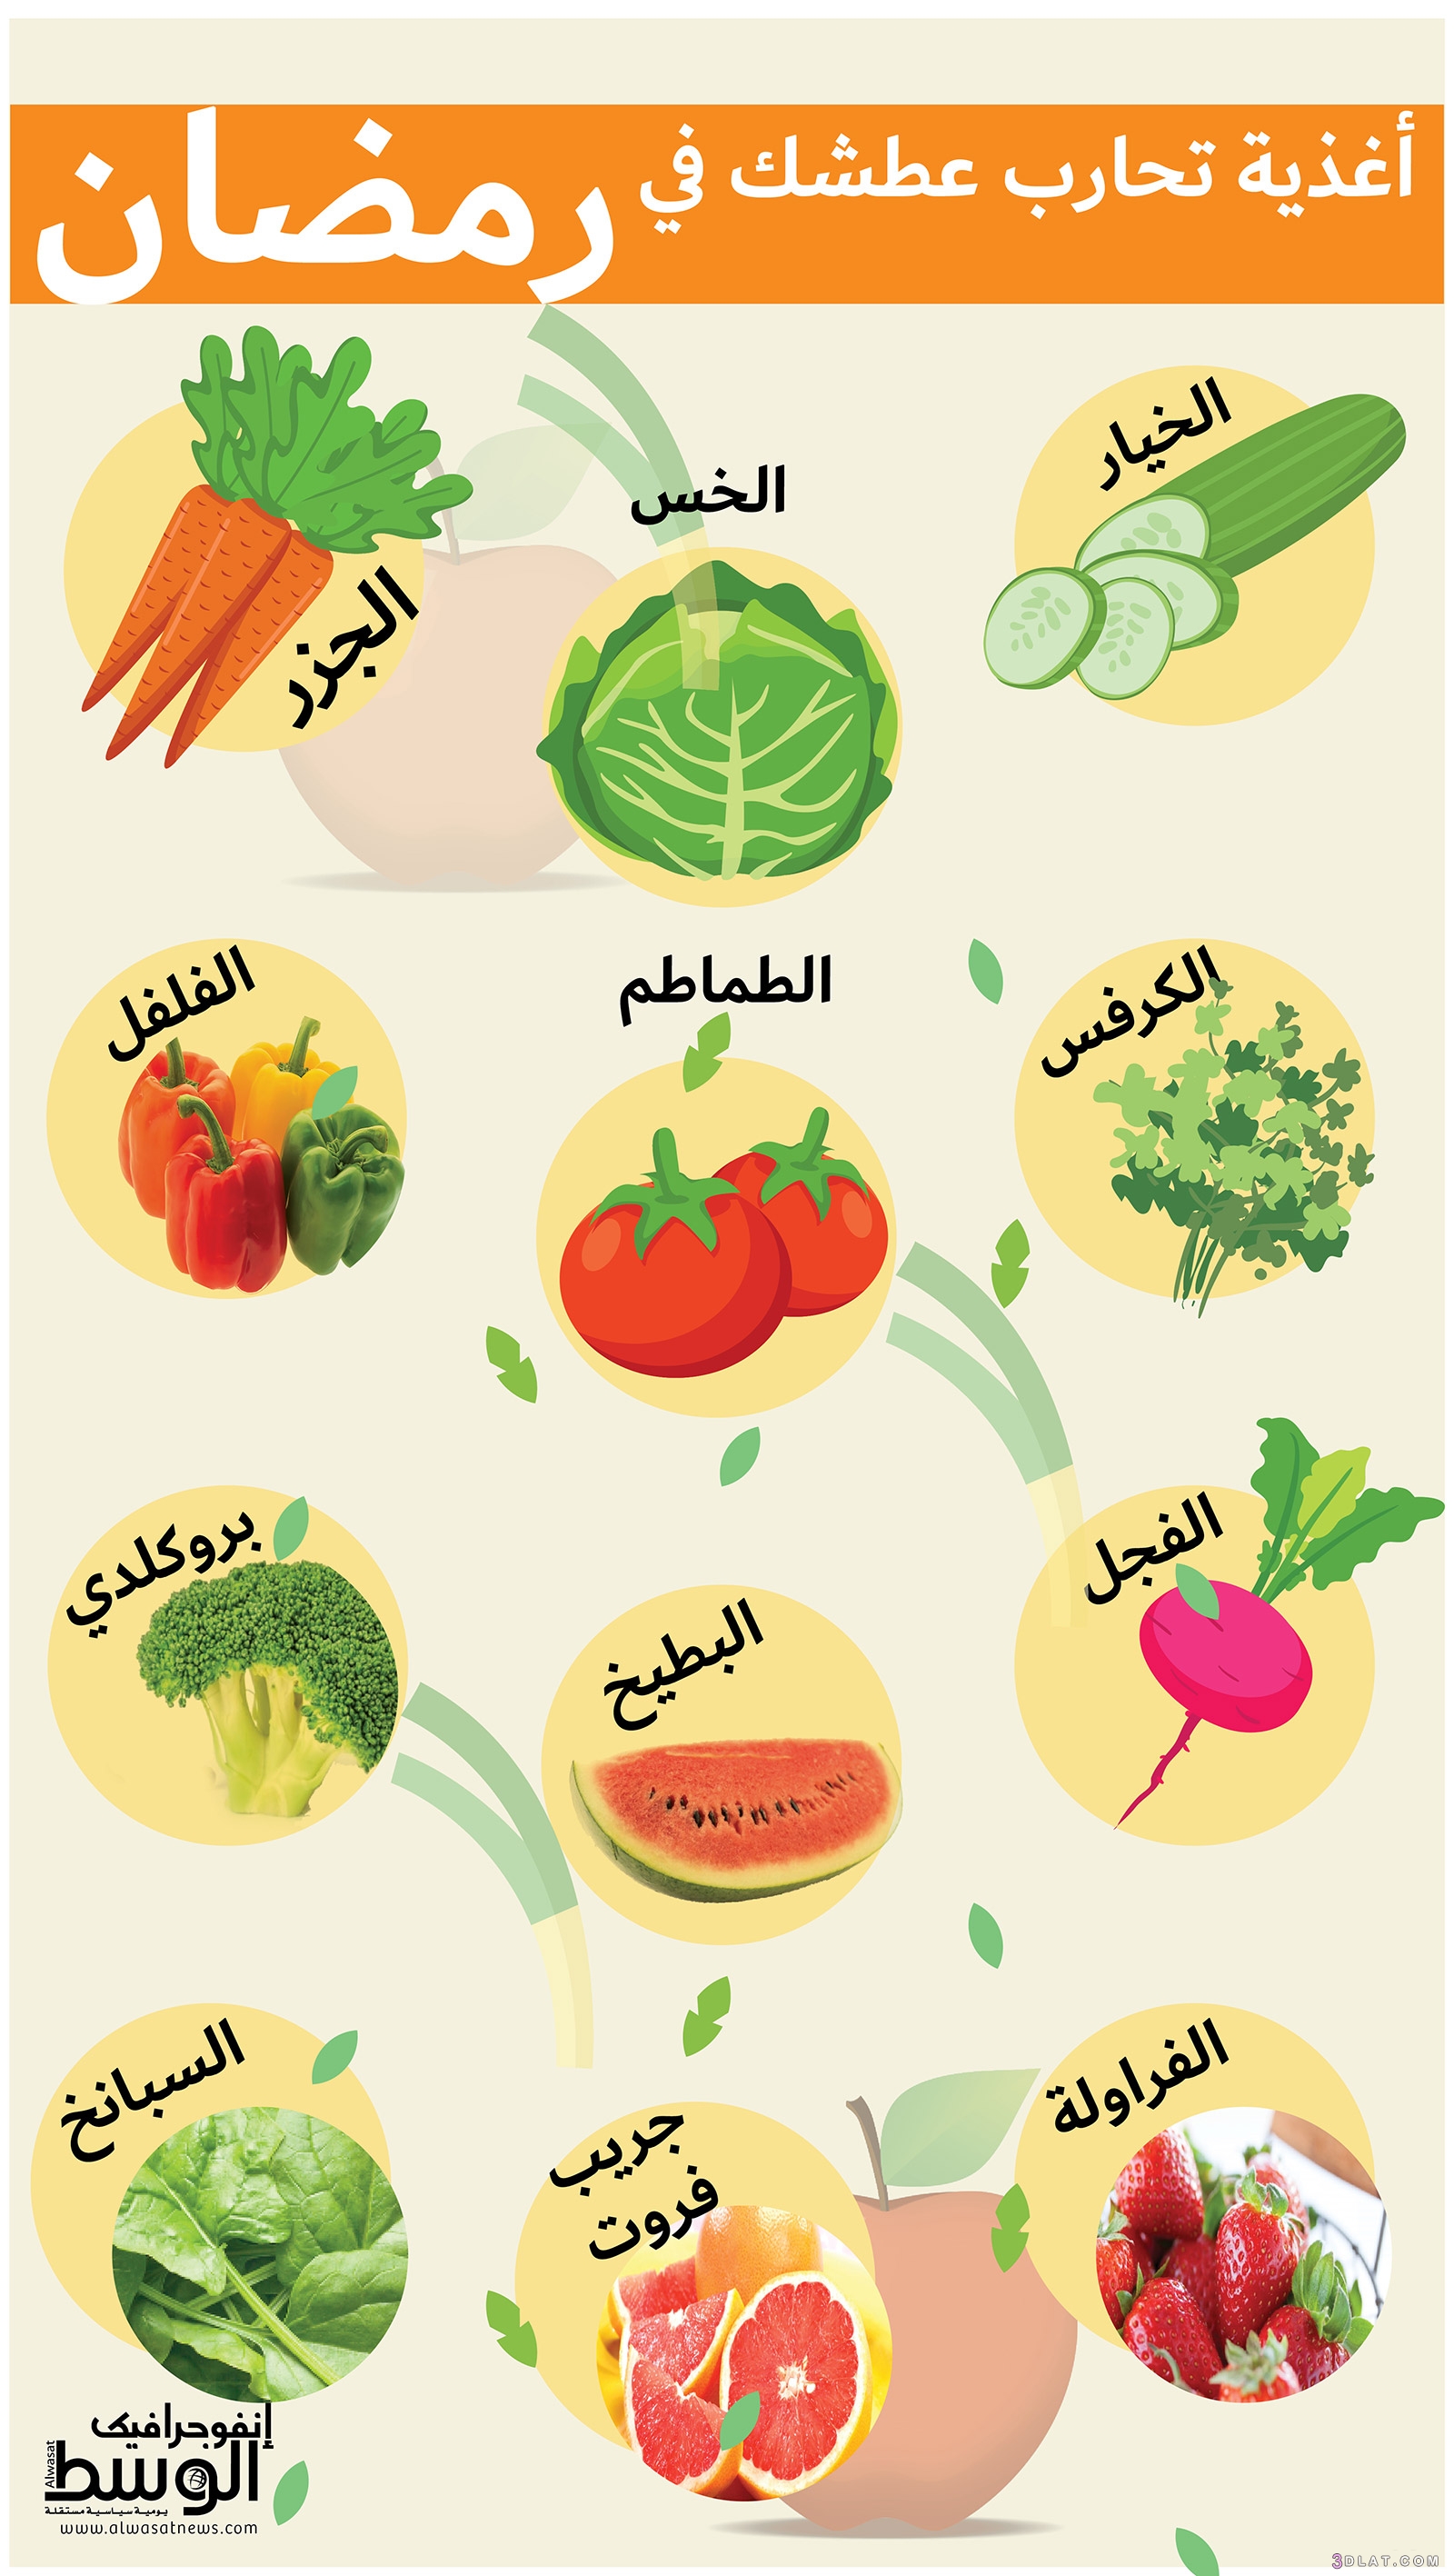 أغذية تحارب العطش في رمضان،انفوجرافيك | أغذية تحارب عطشك في رمضان